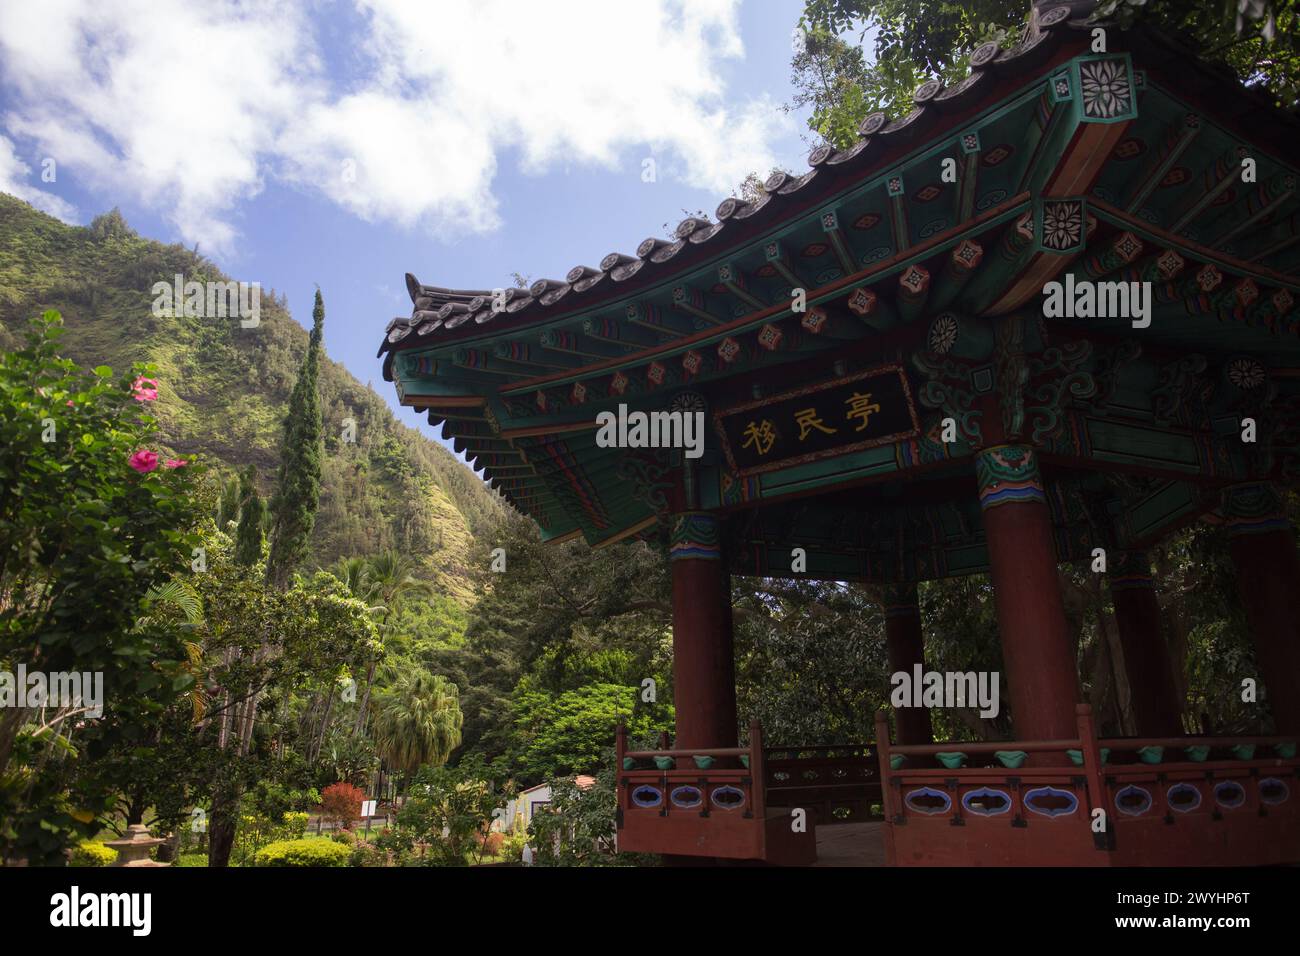 Kepaniwai Park, los jardines de patrimonio aisian en la isla de estatuas mauifeature, árboles imponentes, una pagoda, peces koi y hermosos alrededores Foto de stock